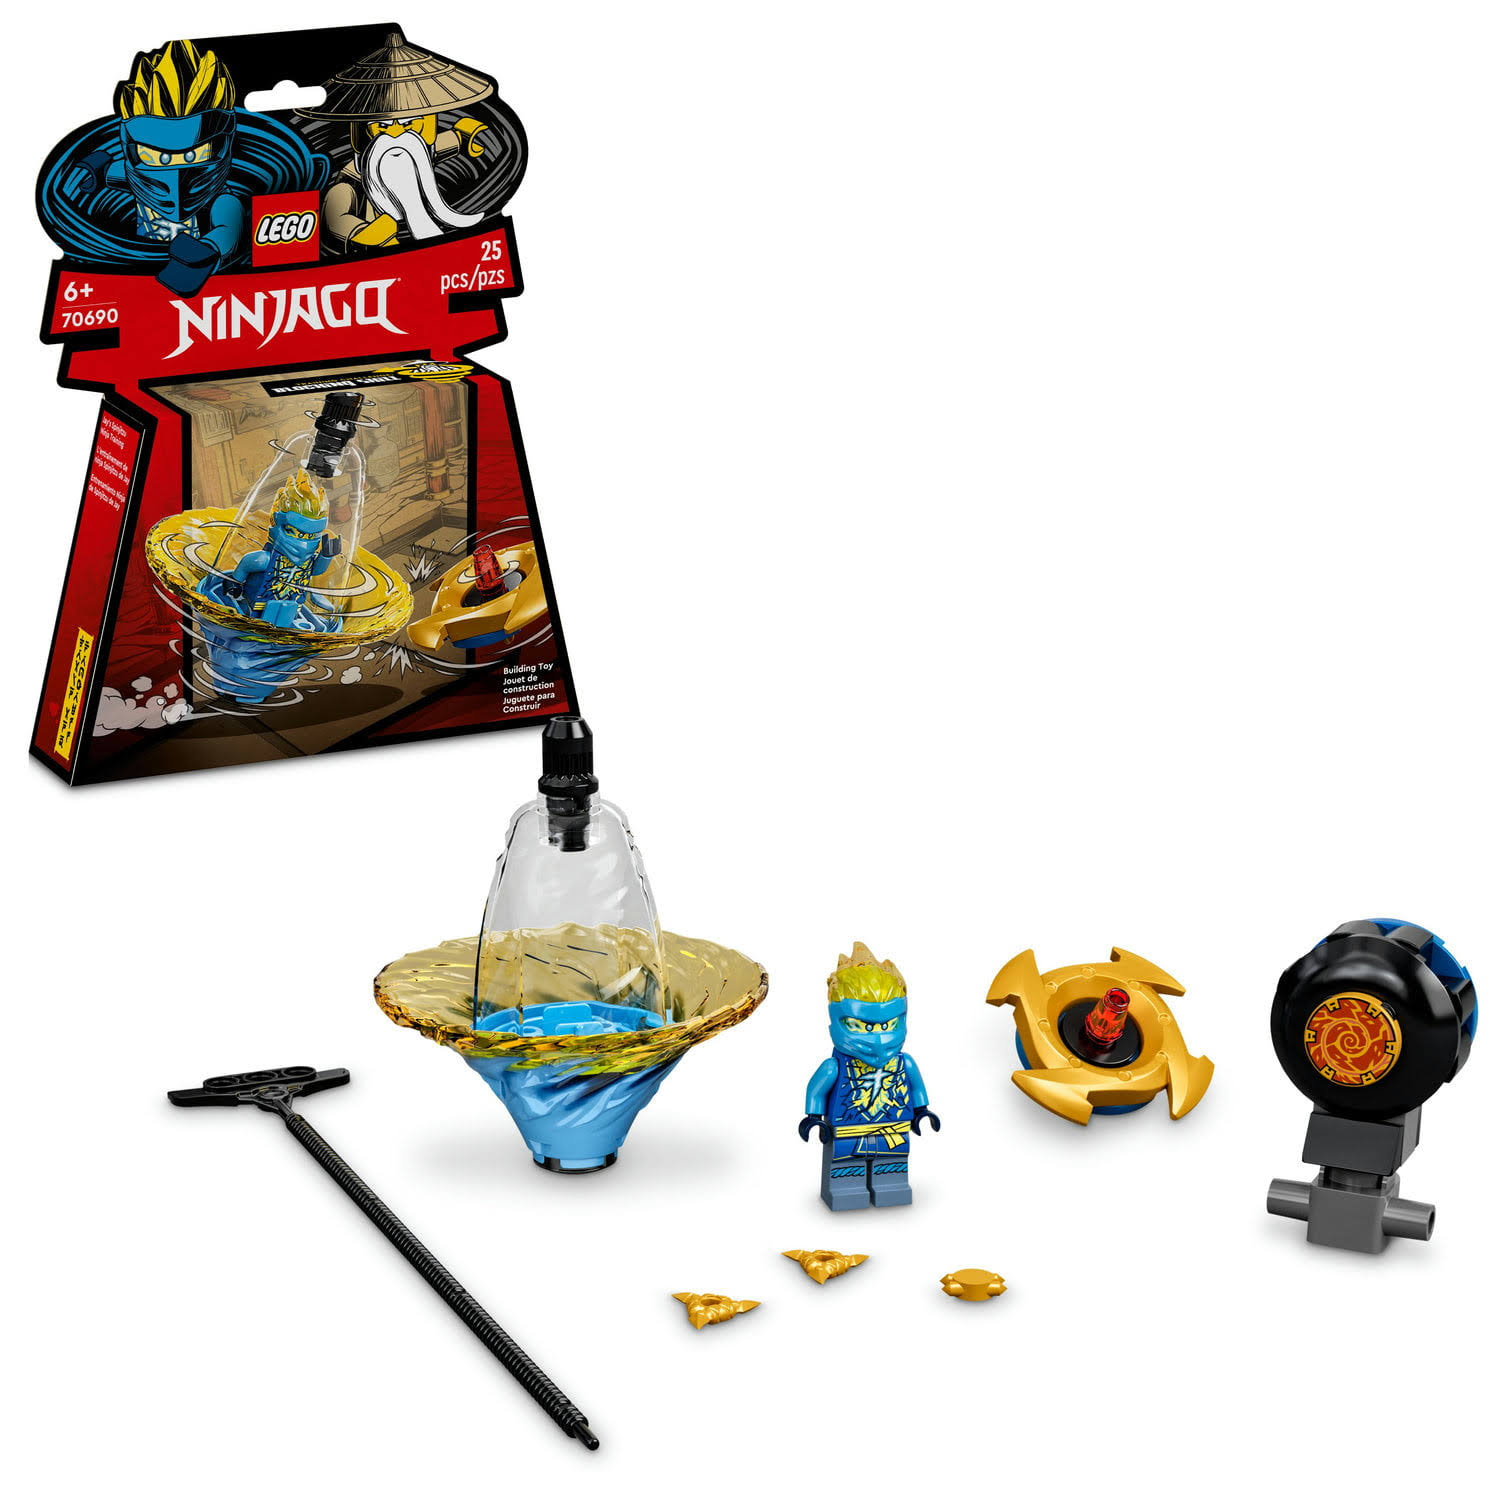 LEGO NINJAGO: Jay’s Spinjitzu Ninja Training Spin Toy (70690)